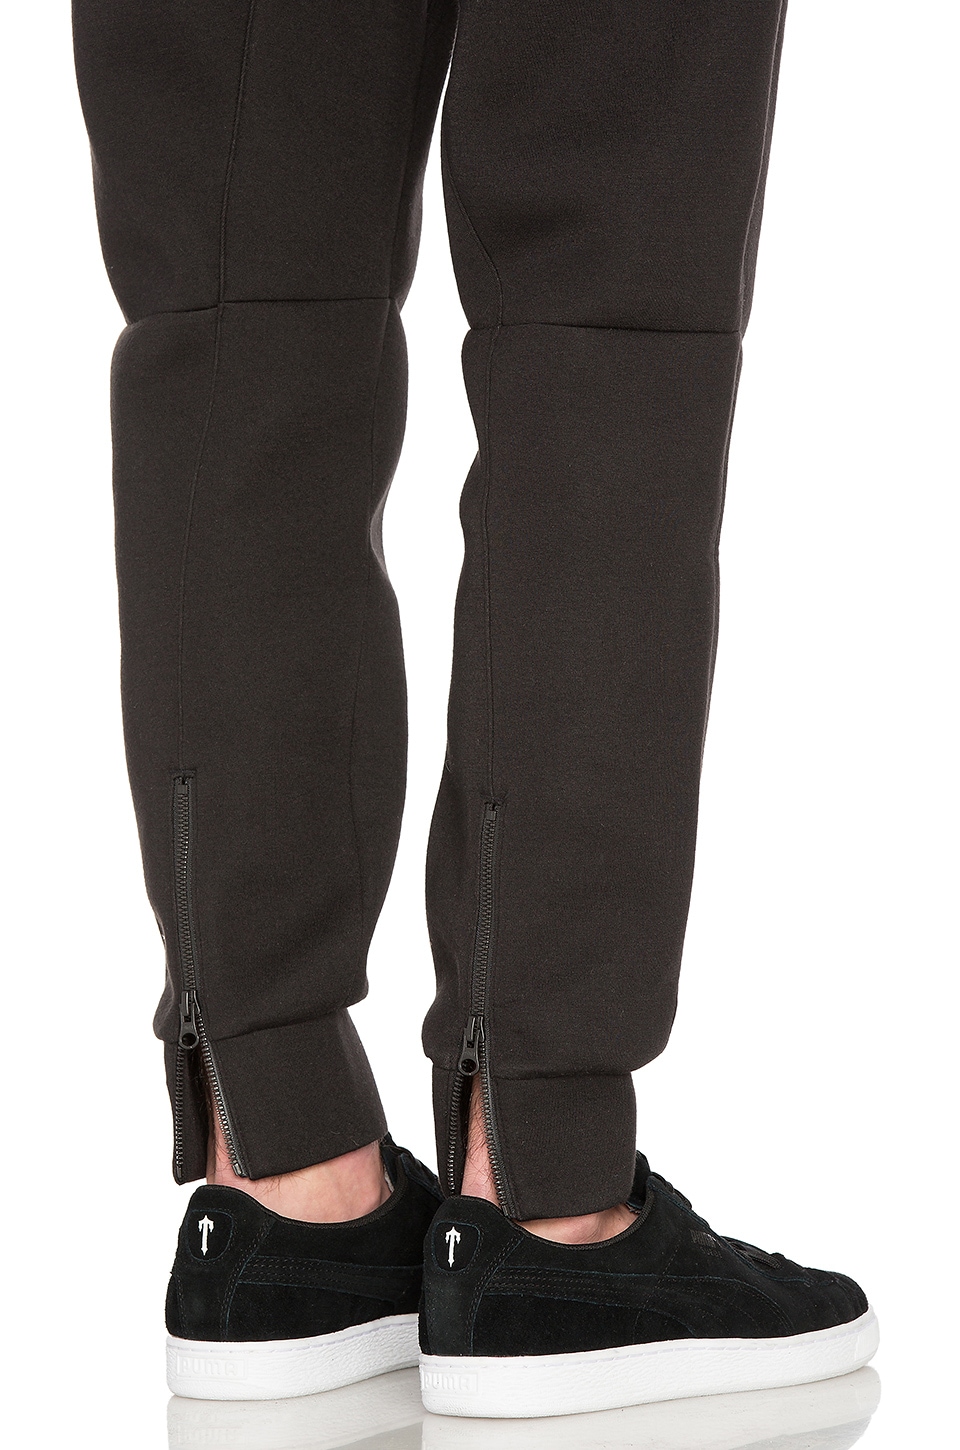 Puma Select x Trapstar Sweat Pants in Puma Black | REVOLVE